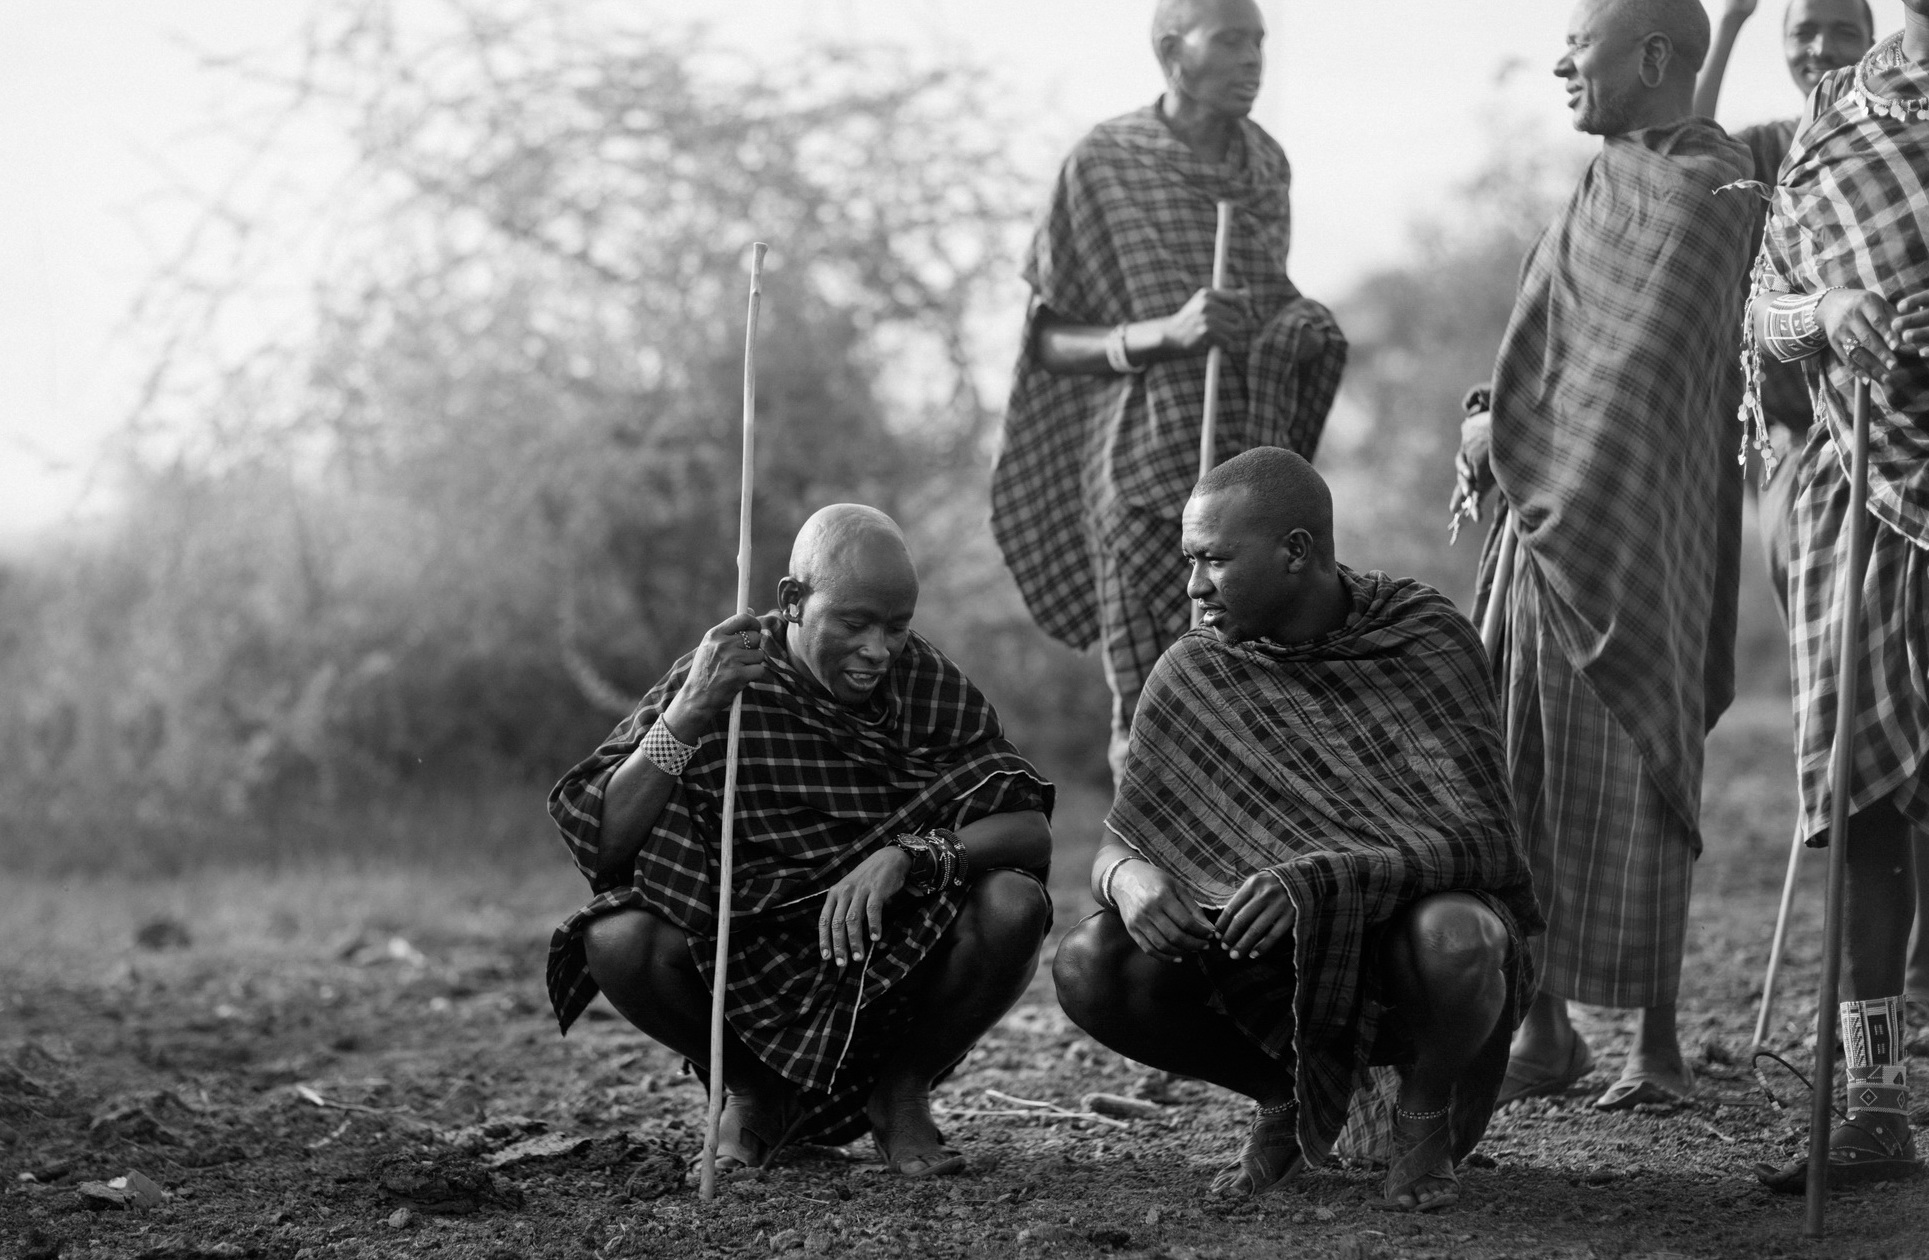 Masajské tanečky - Skoro až k neuvěření, Martina Grmolenská - Planeta lidí